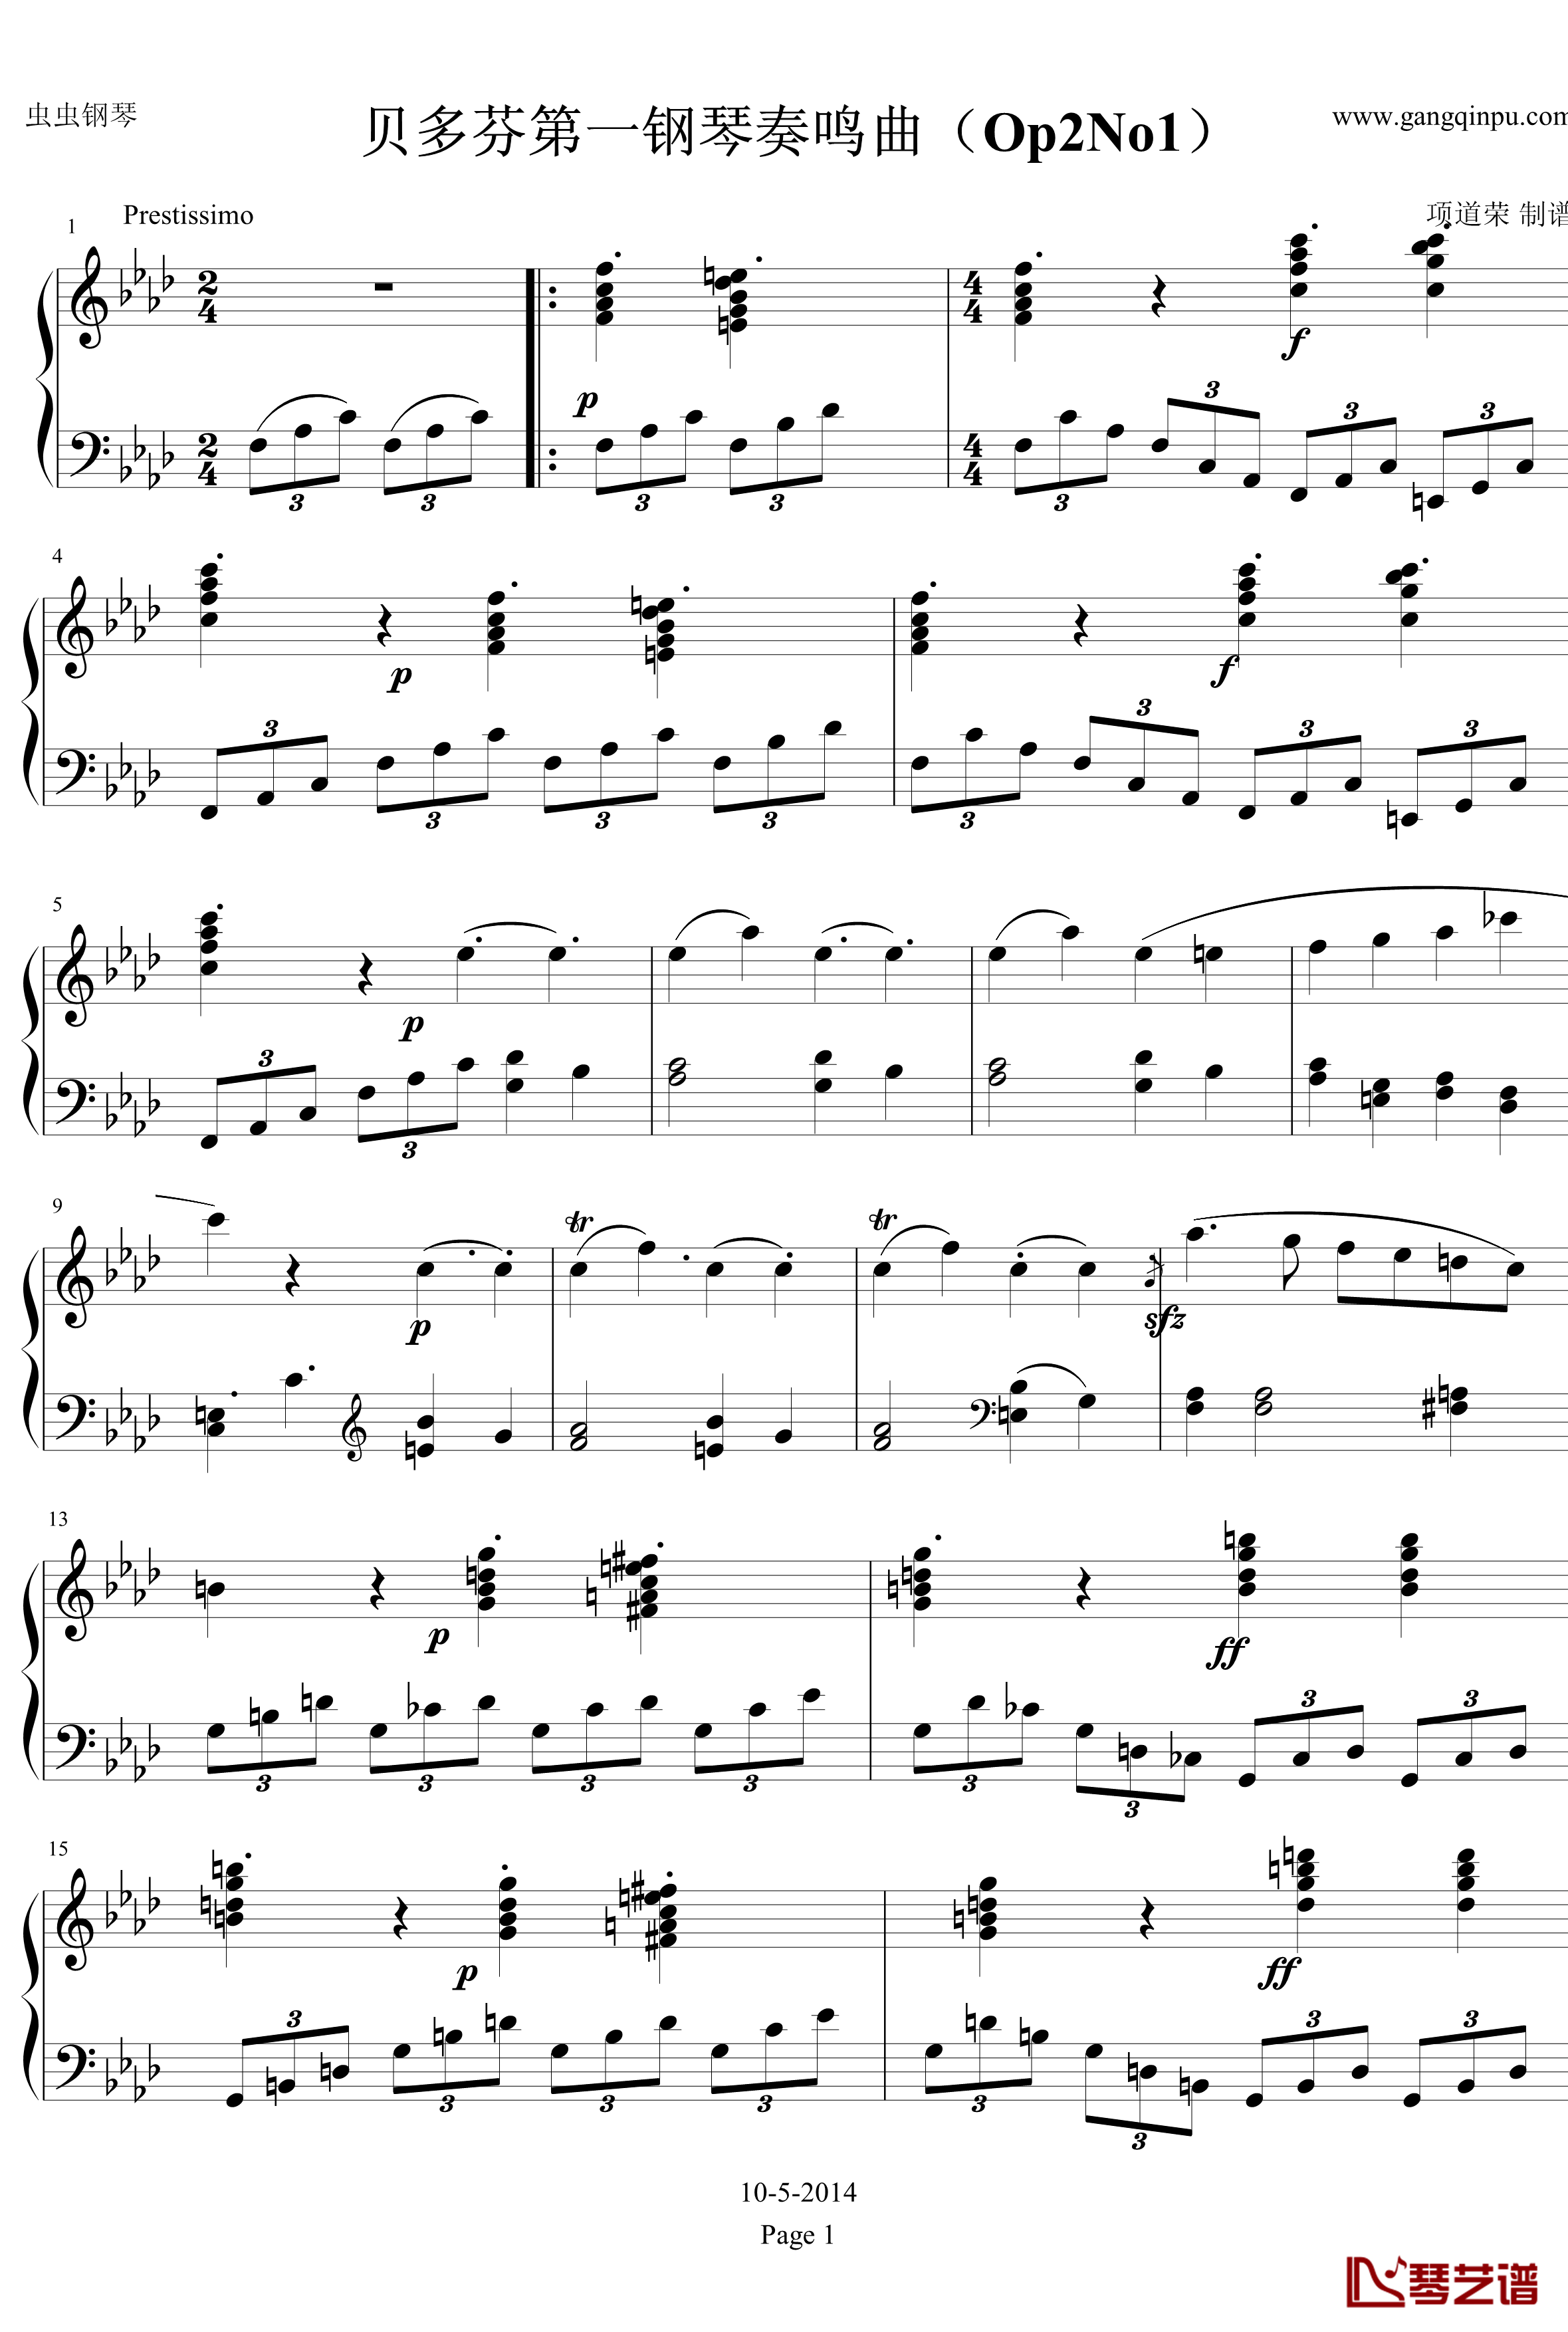 贝多芬第一钢琴奏鸣曲钢琴谱-作品2，第一号-贝多芬-beethoven